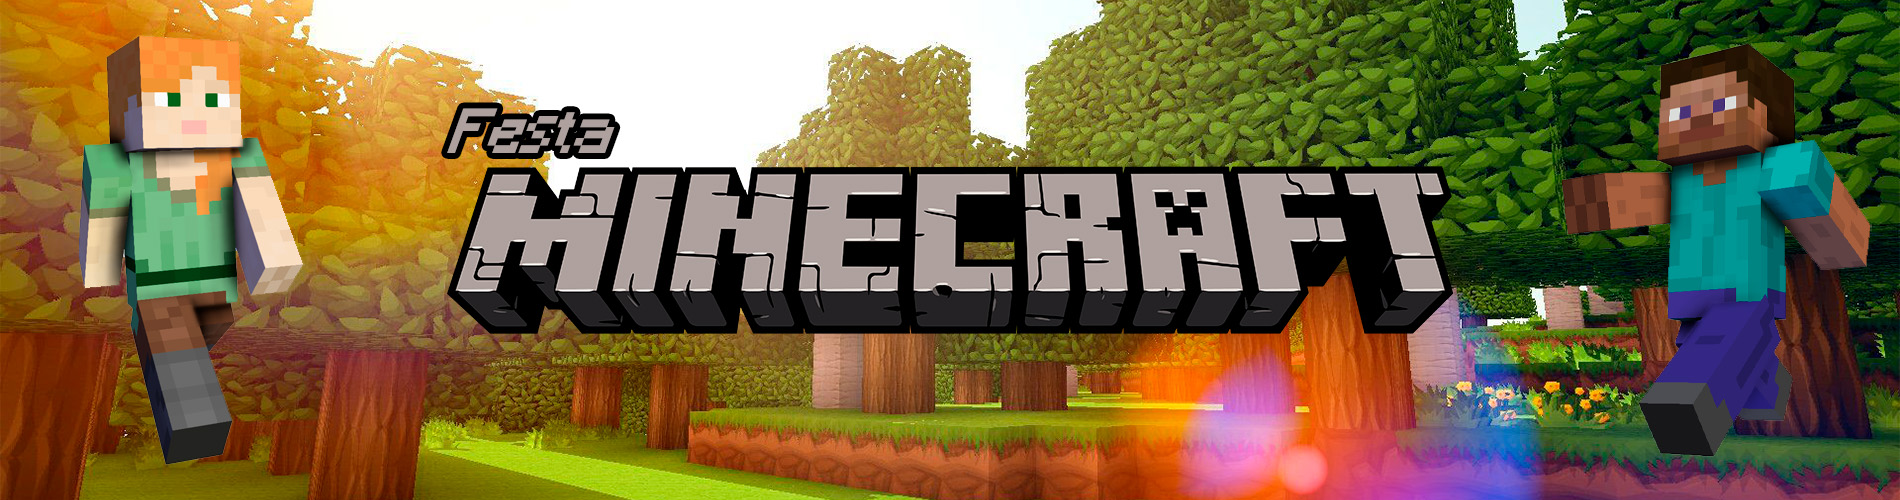 Lata Creeper para Lembrancinhas - Minecraft - 7,5 cm x 9 cm - 1 unidade - Cromus - Rizzo